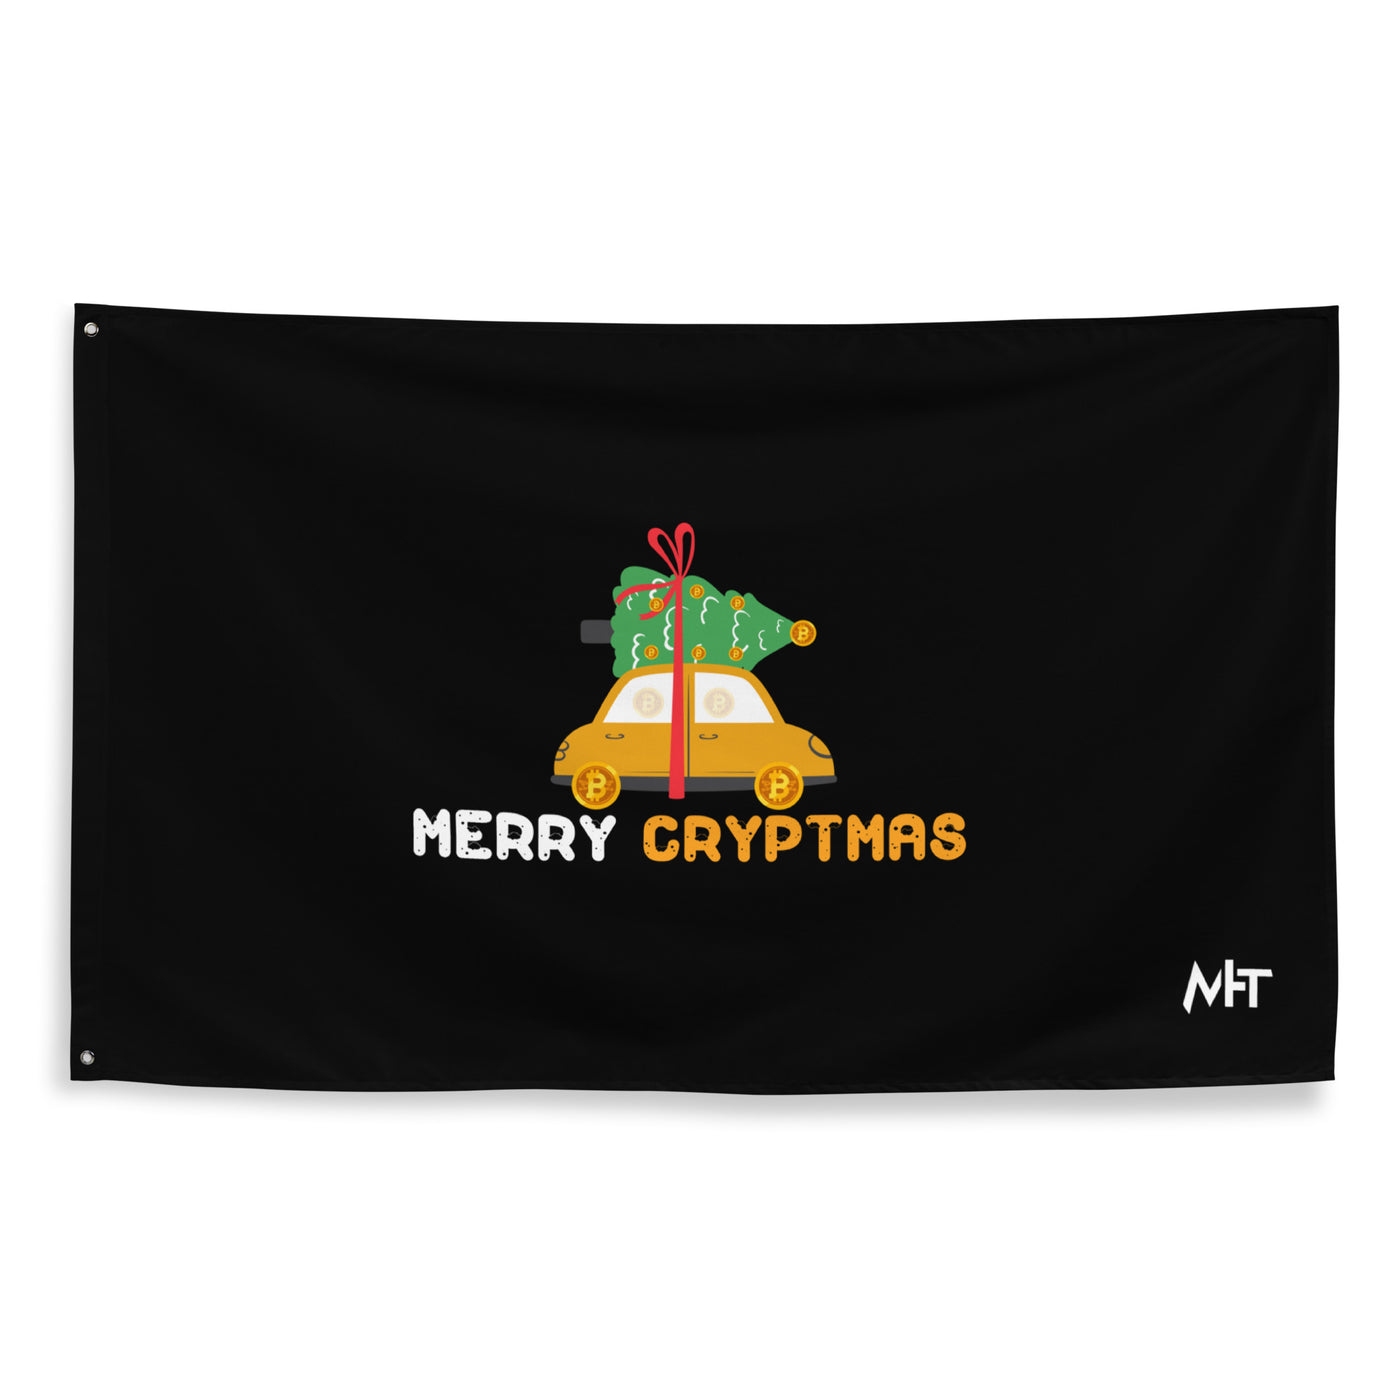 Merry Cryptmas - Flag